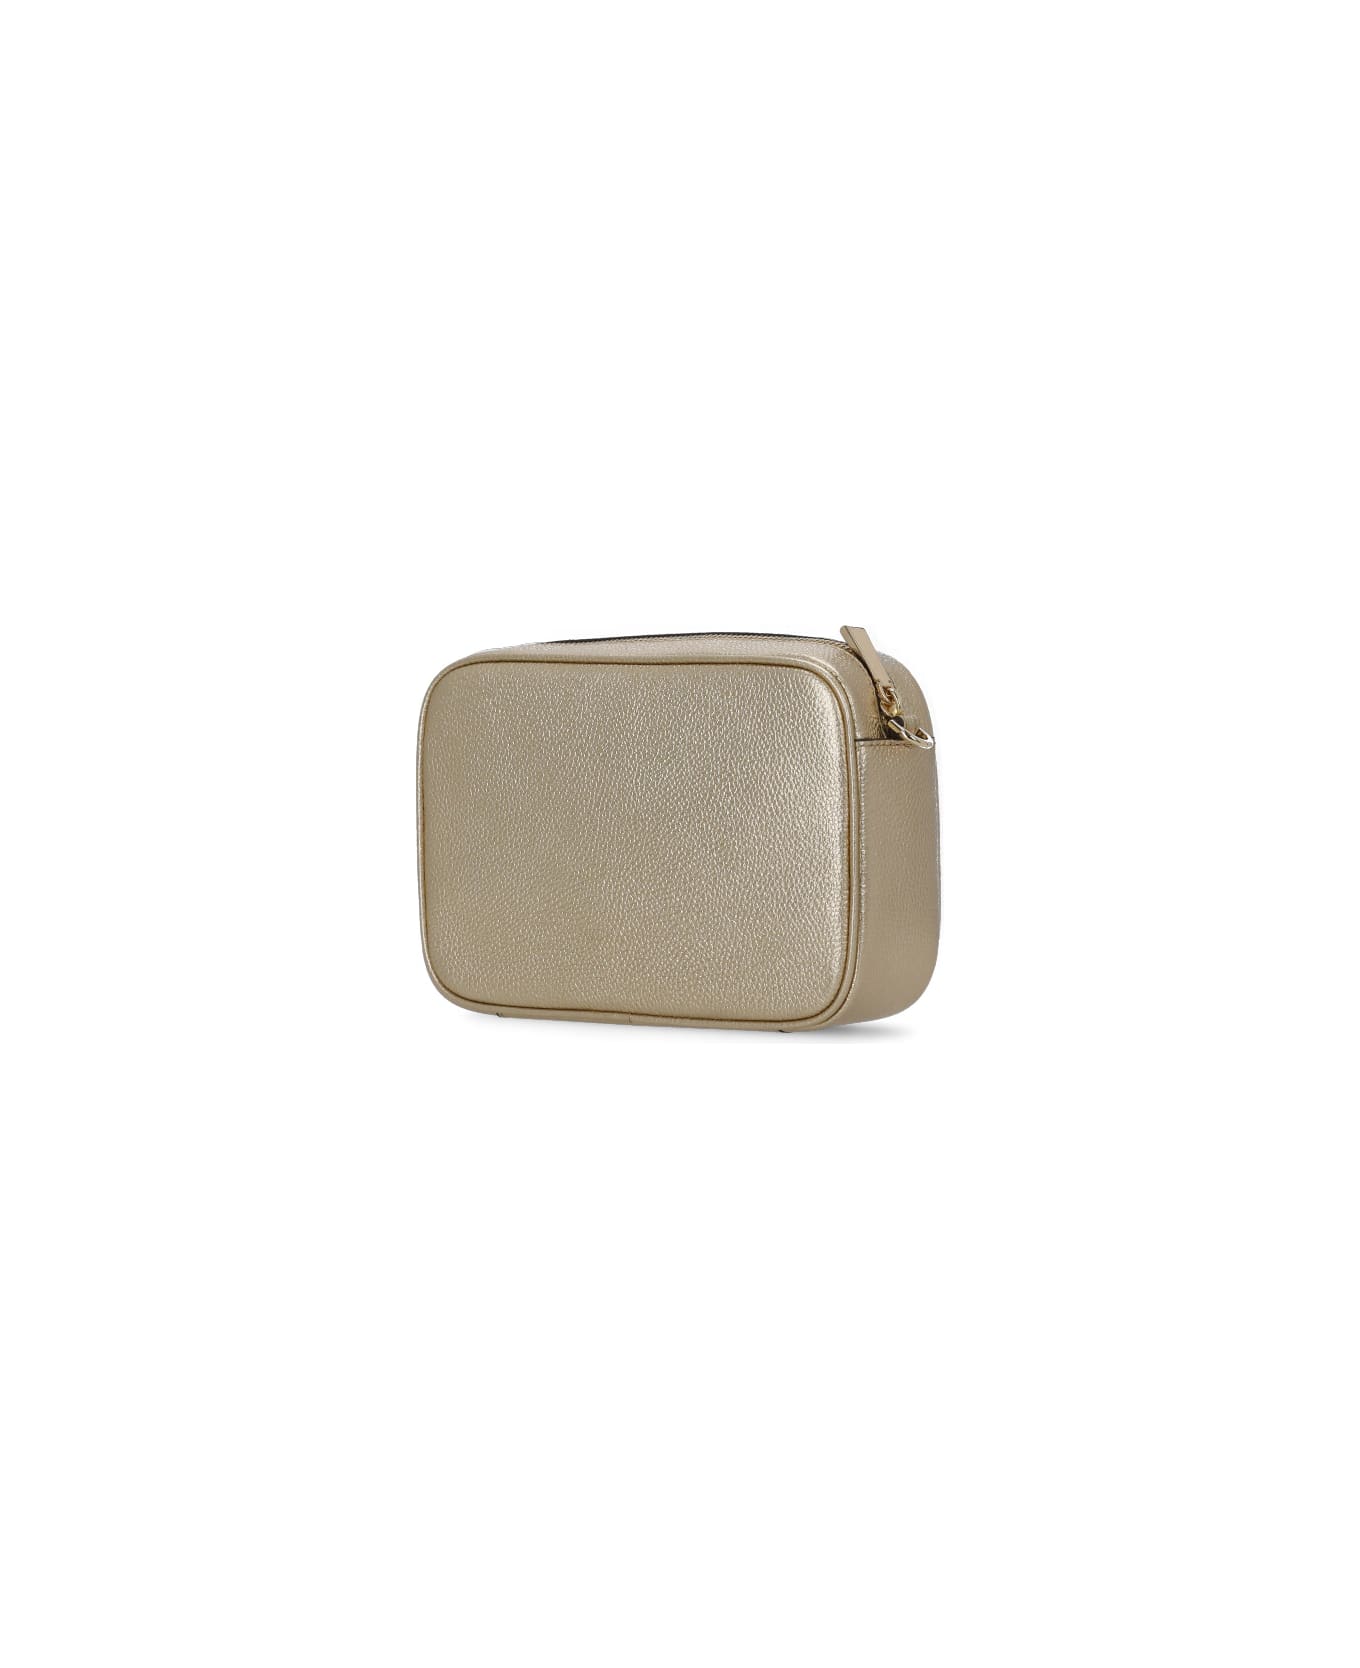 Michael Kors Leather Shoulder Bag - Gold